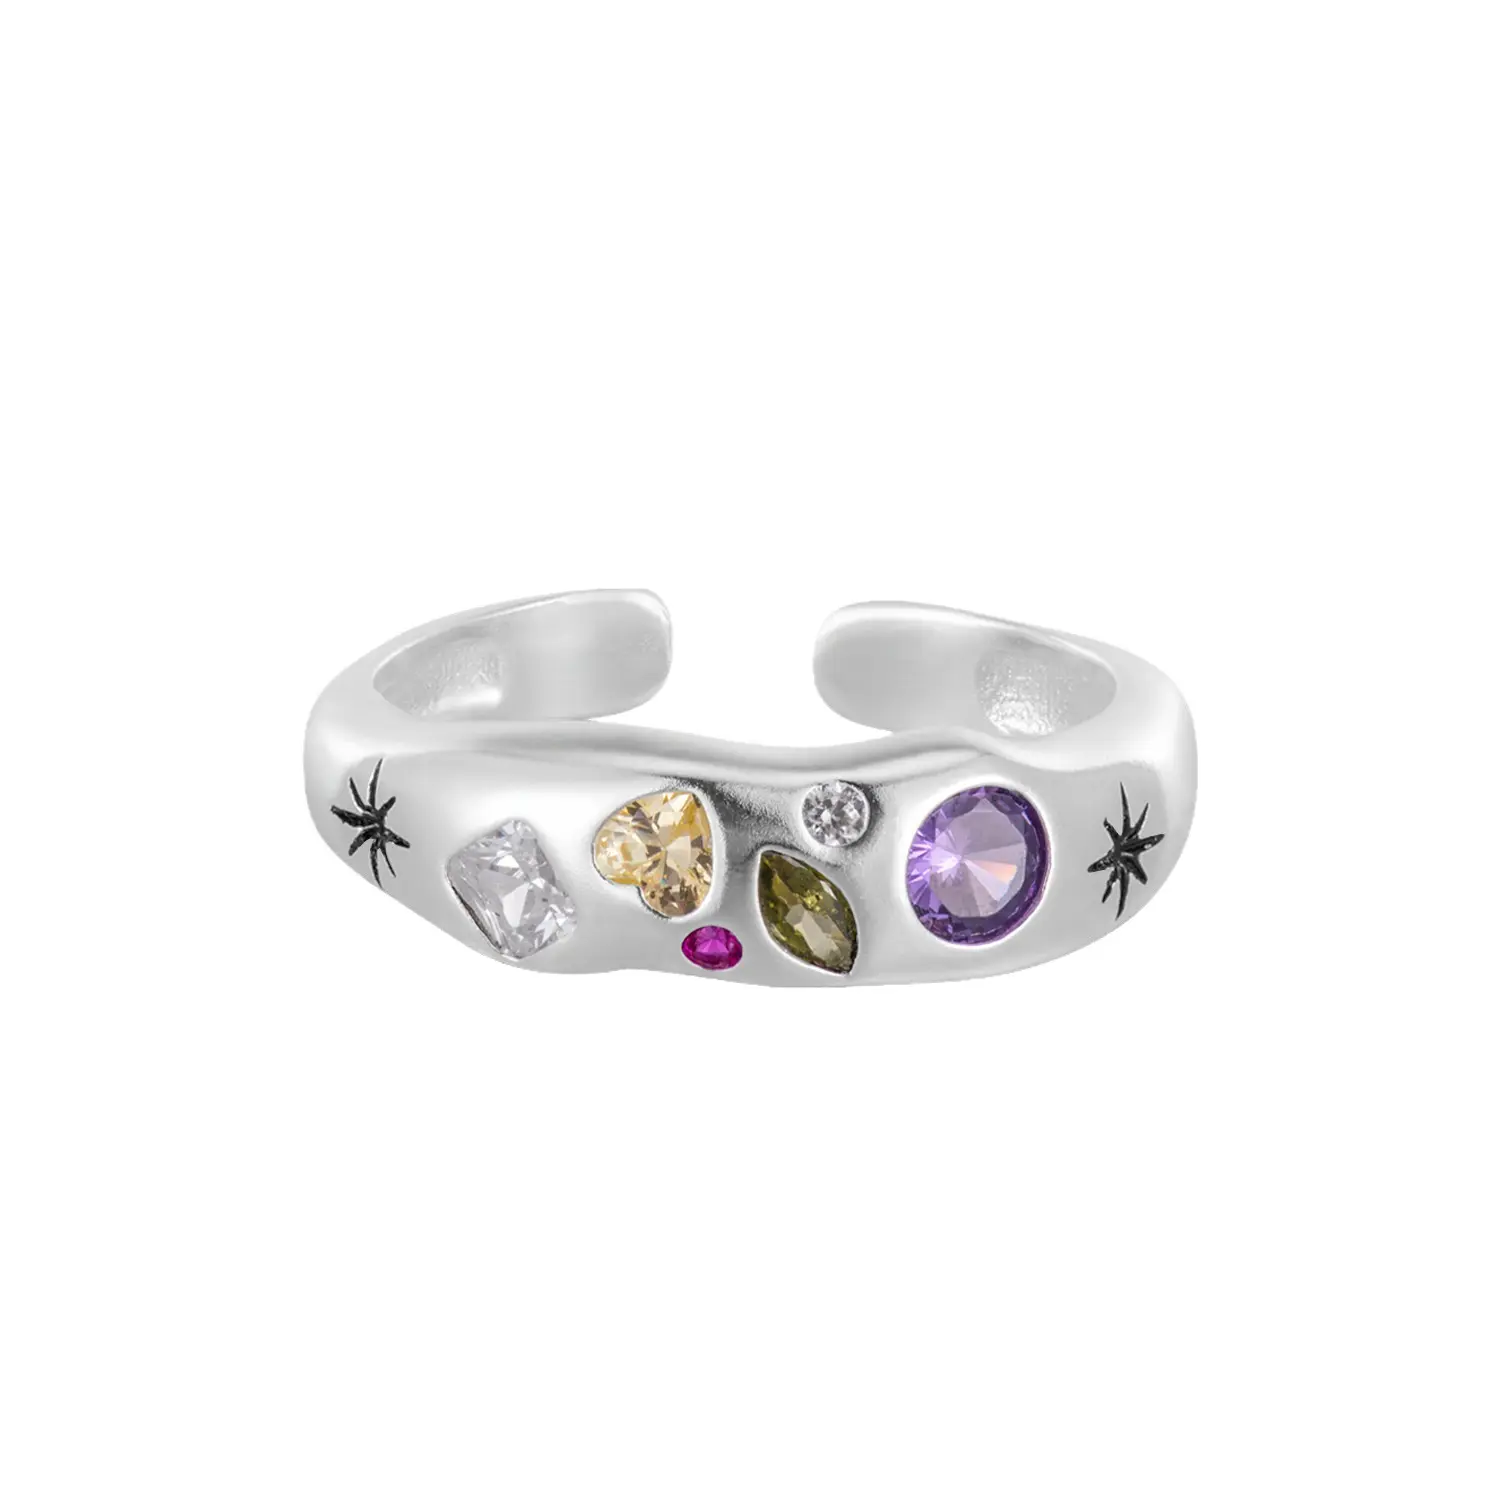 Anello aperto in argento sterling S925 con zirconi colorati irregolari anello colorato intarsiato smerigliato si riferisce ai gioielli.